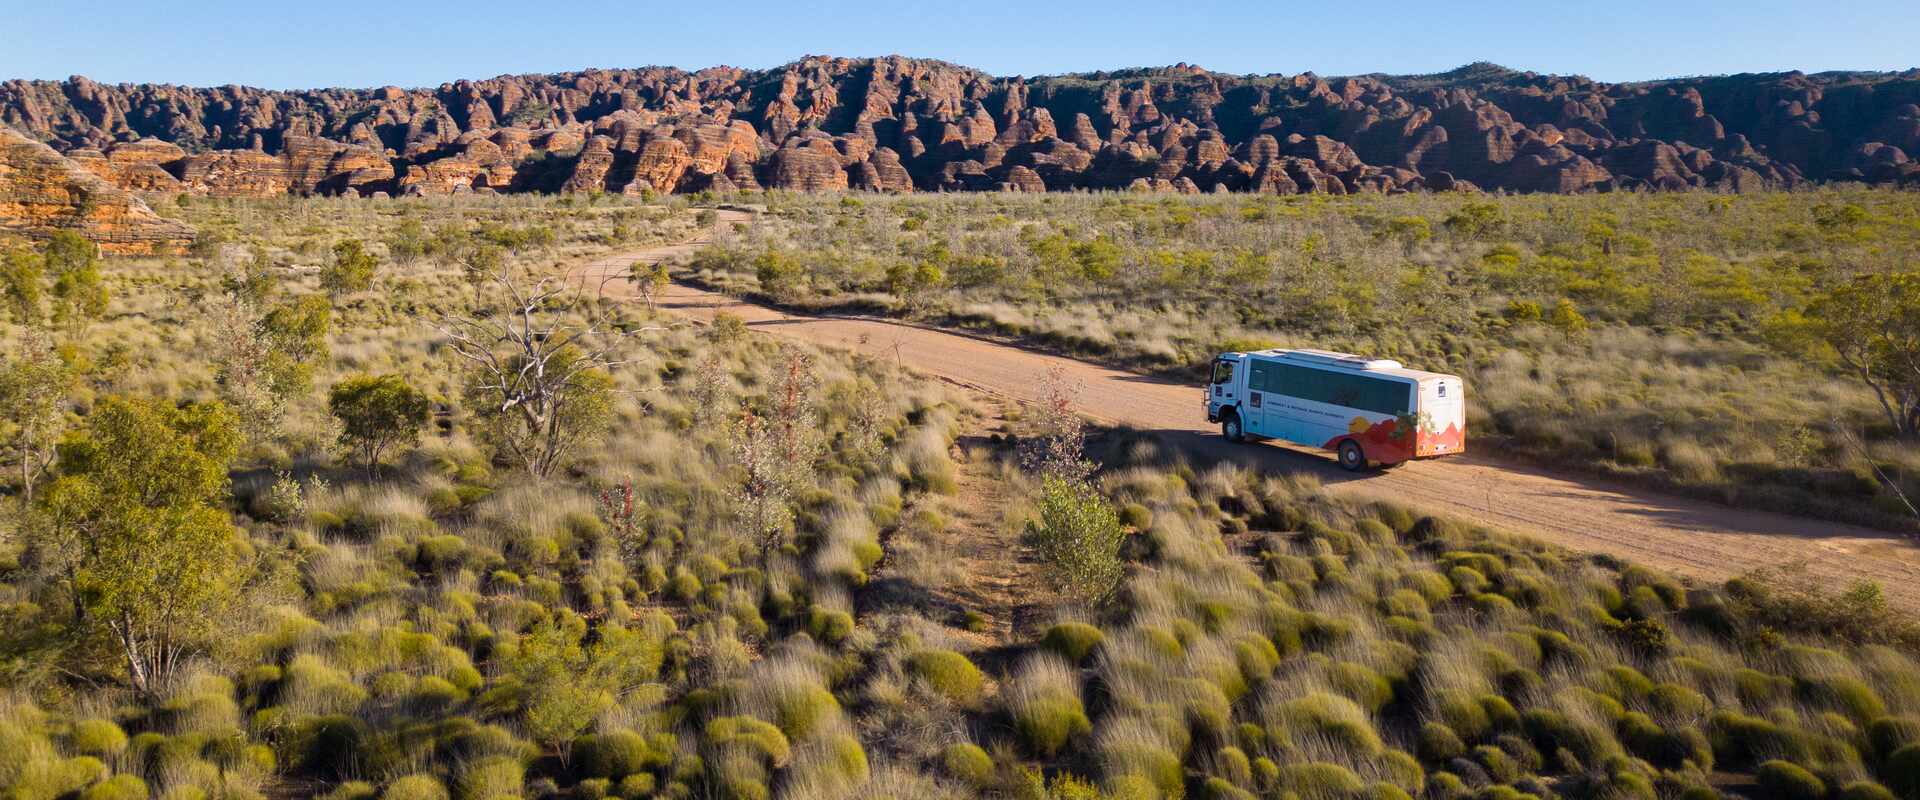 4WD driving in Bungle Bungles, Western Australia